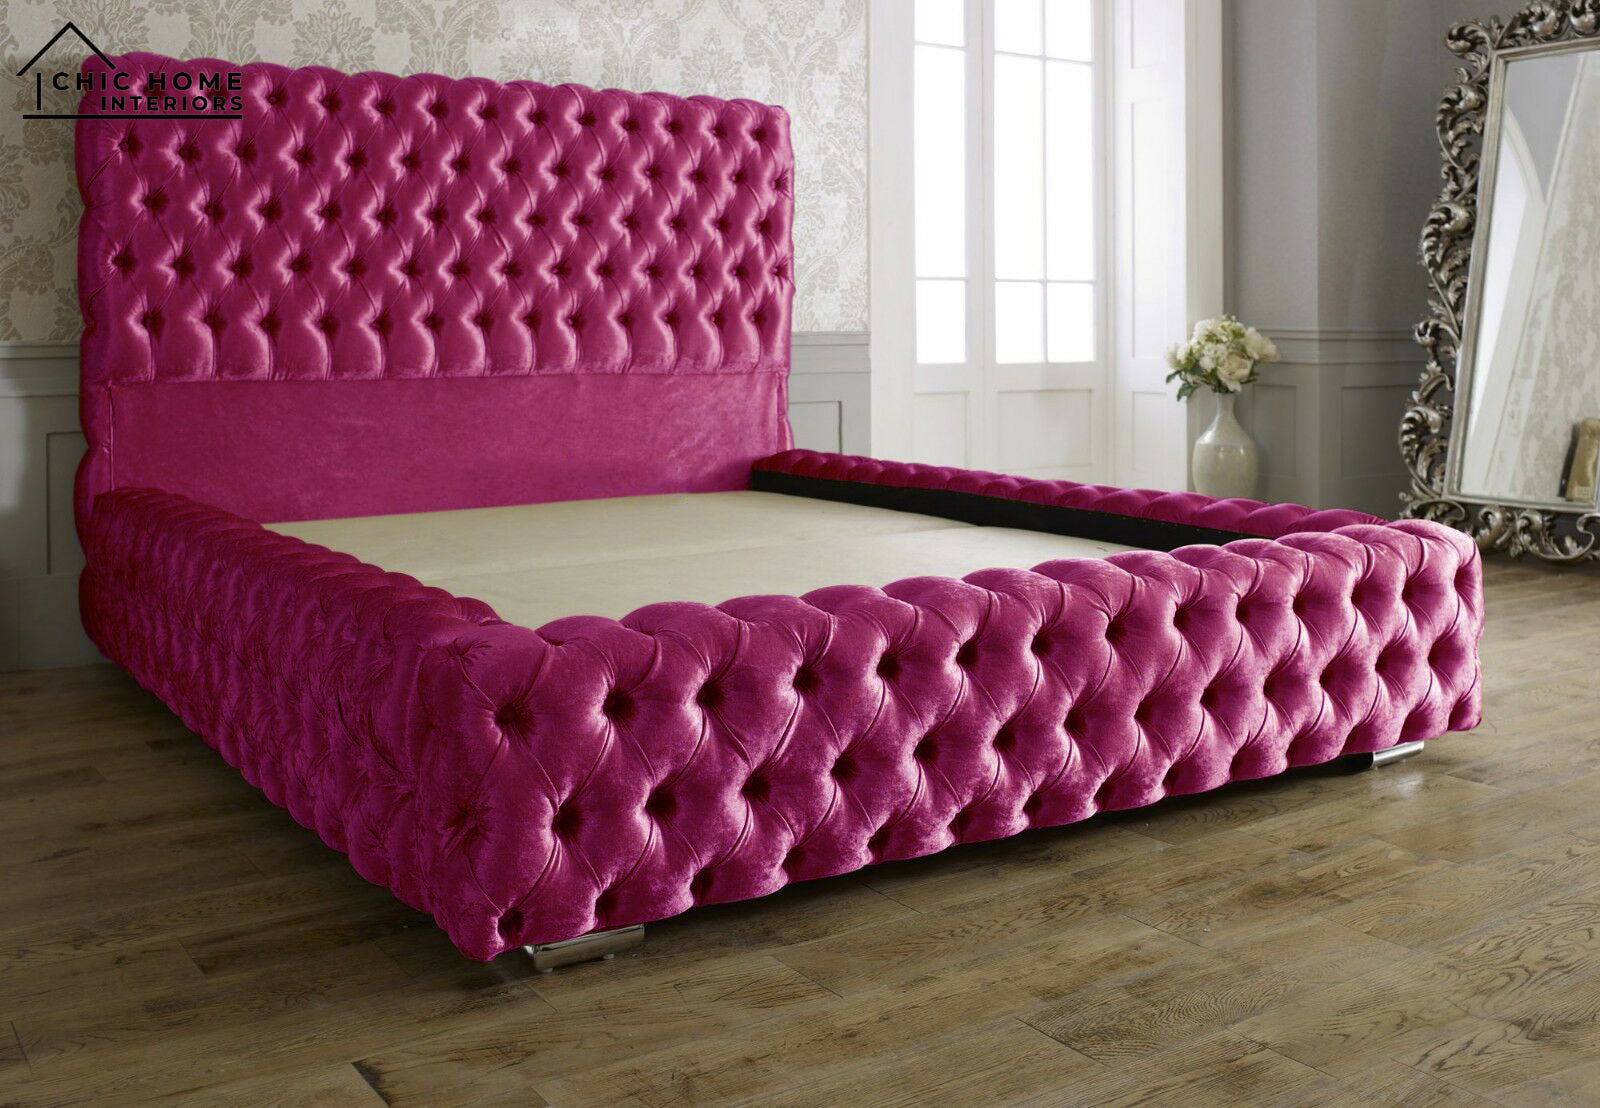 The Bespoke Madelyn Bed- Fully Customisable With Ottoman Storage- Velvet Monaco Range